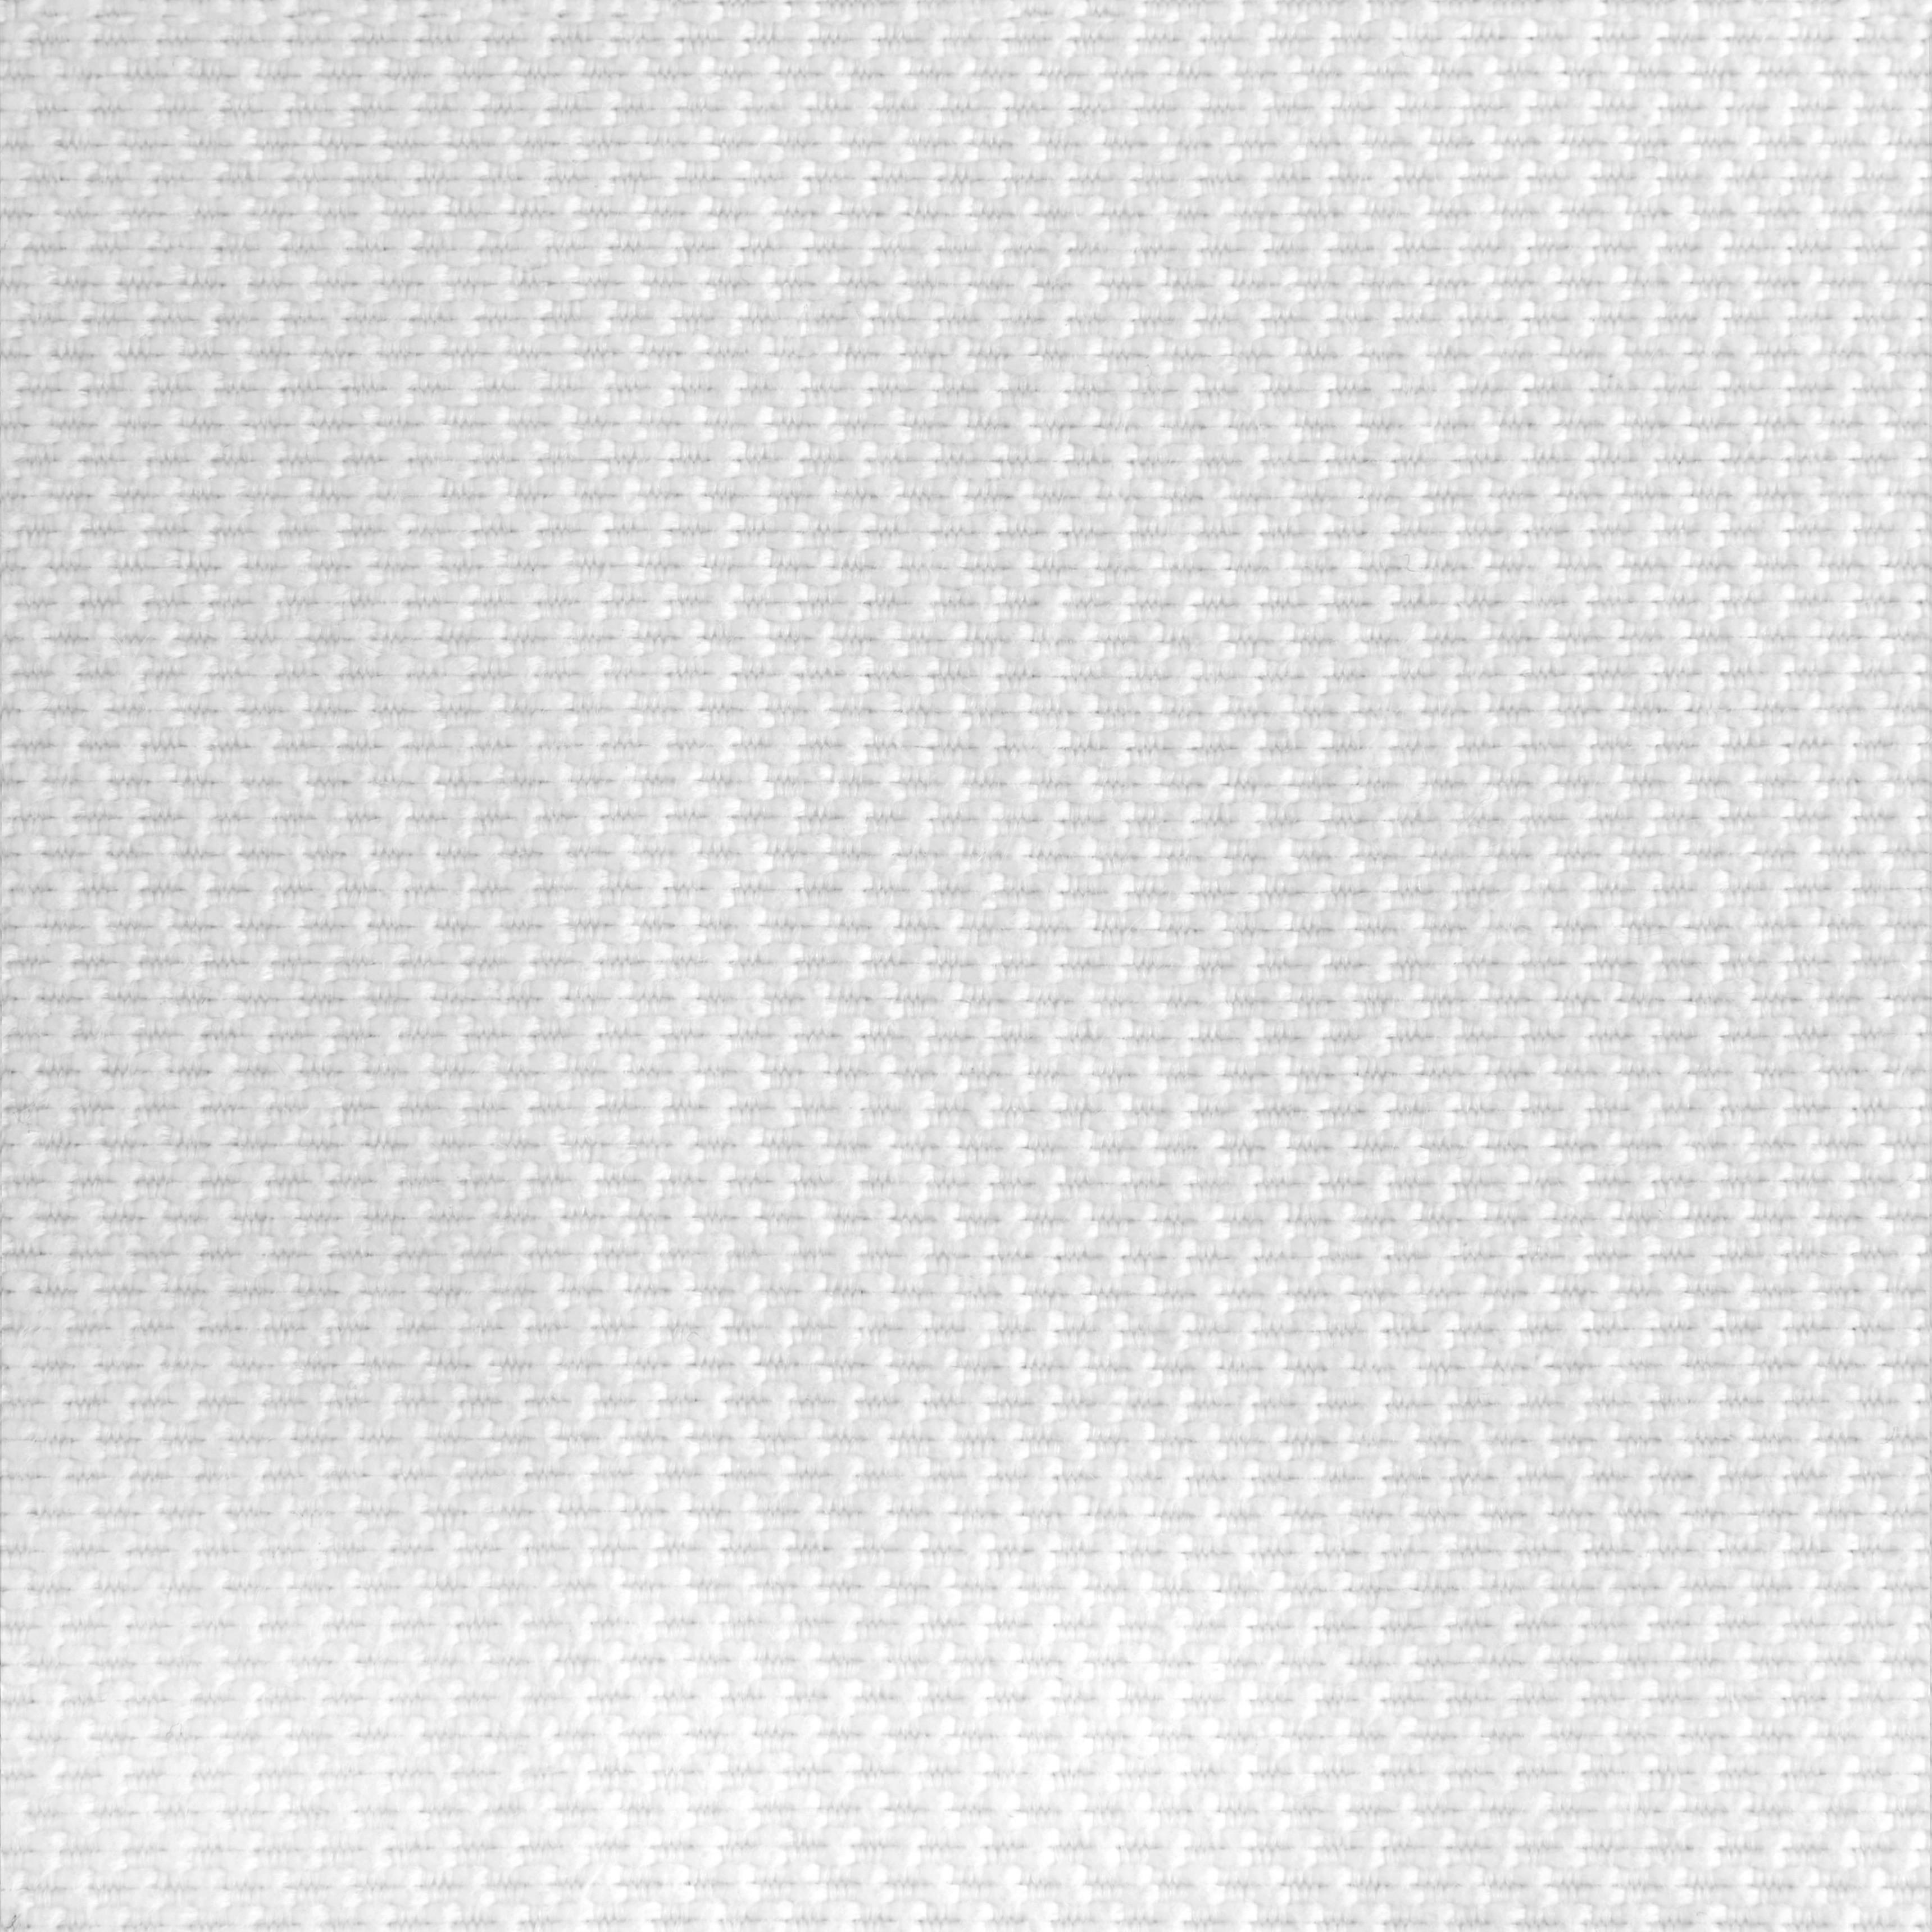 Zierkissen Felix in Weiß ca. 60x60cm - Naturfarben, KONVENTIONELL, Textil (60/60cm) - Modern Living